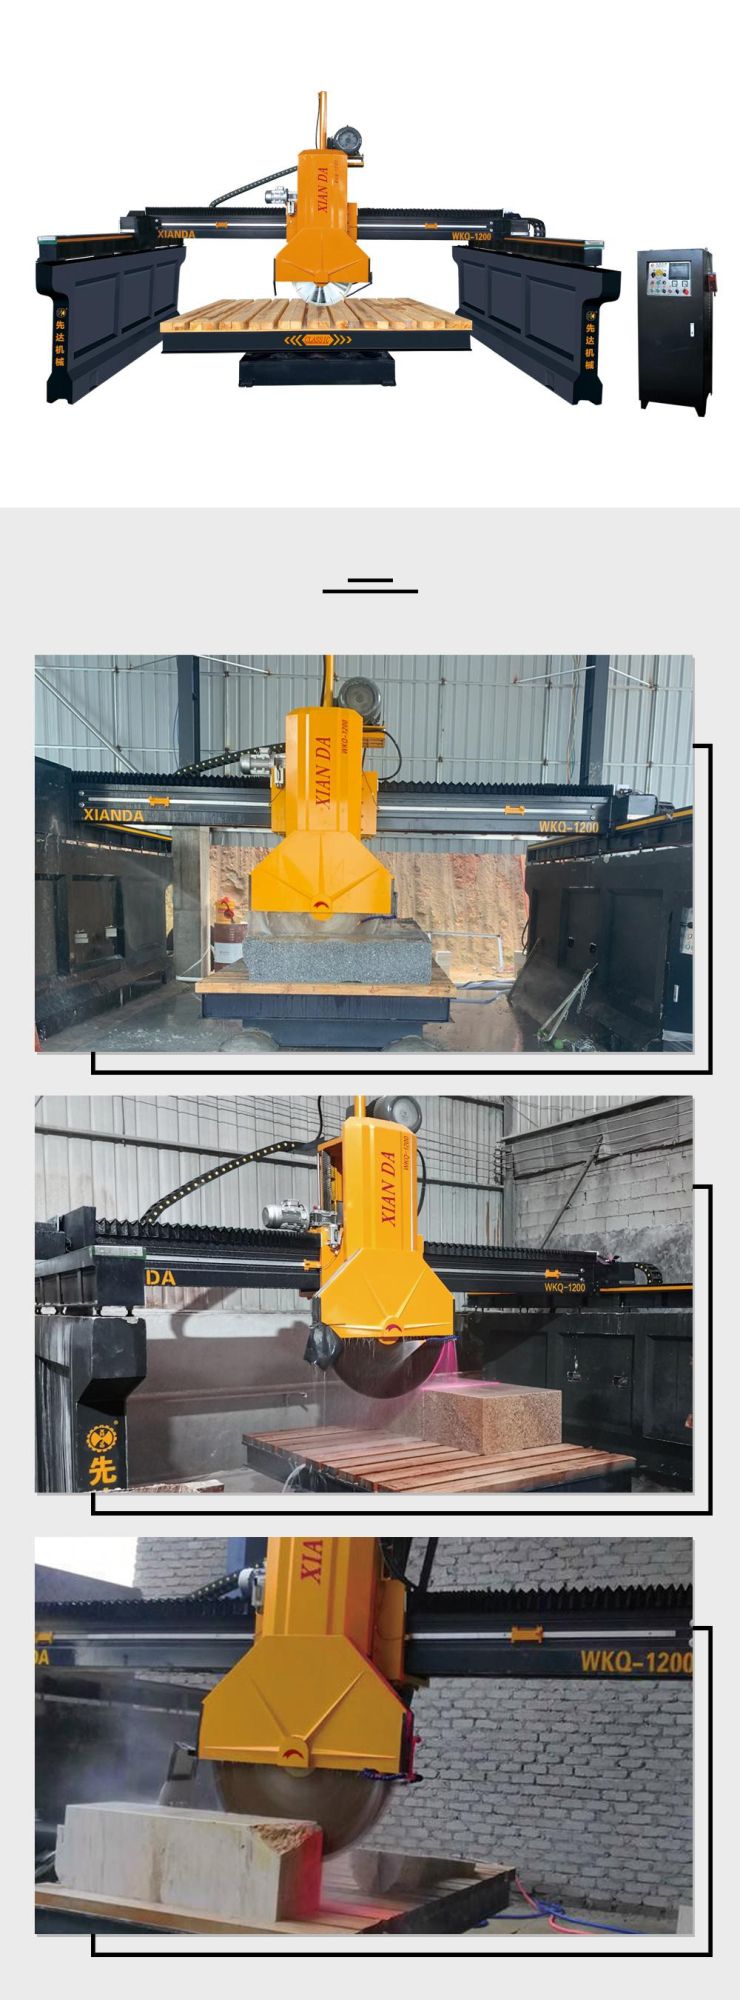 Xianda Middle Block Cutting Machine Wkq-1200, Granite and Marble Cutter